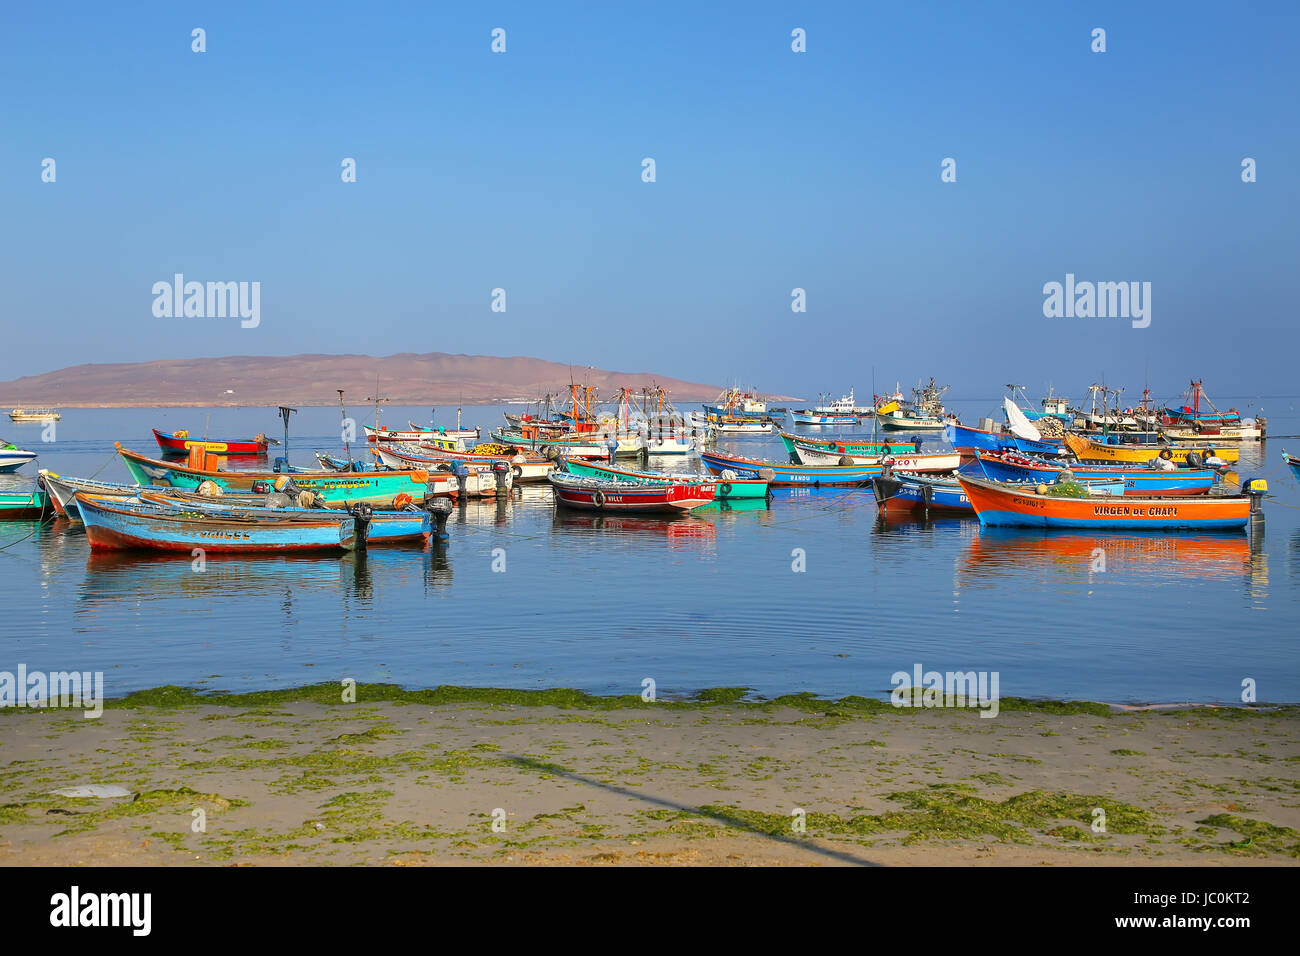 Bunte Fischerboote verankert in Paracas-Bucht, Peru. Paracas ist eine kleine Hafenstadt, catering für Touristen in Paracas Reservat und Ballestas Inseln Stockfoto